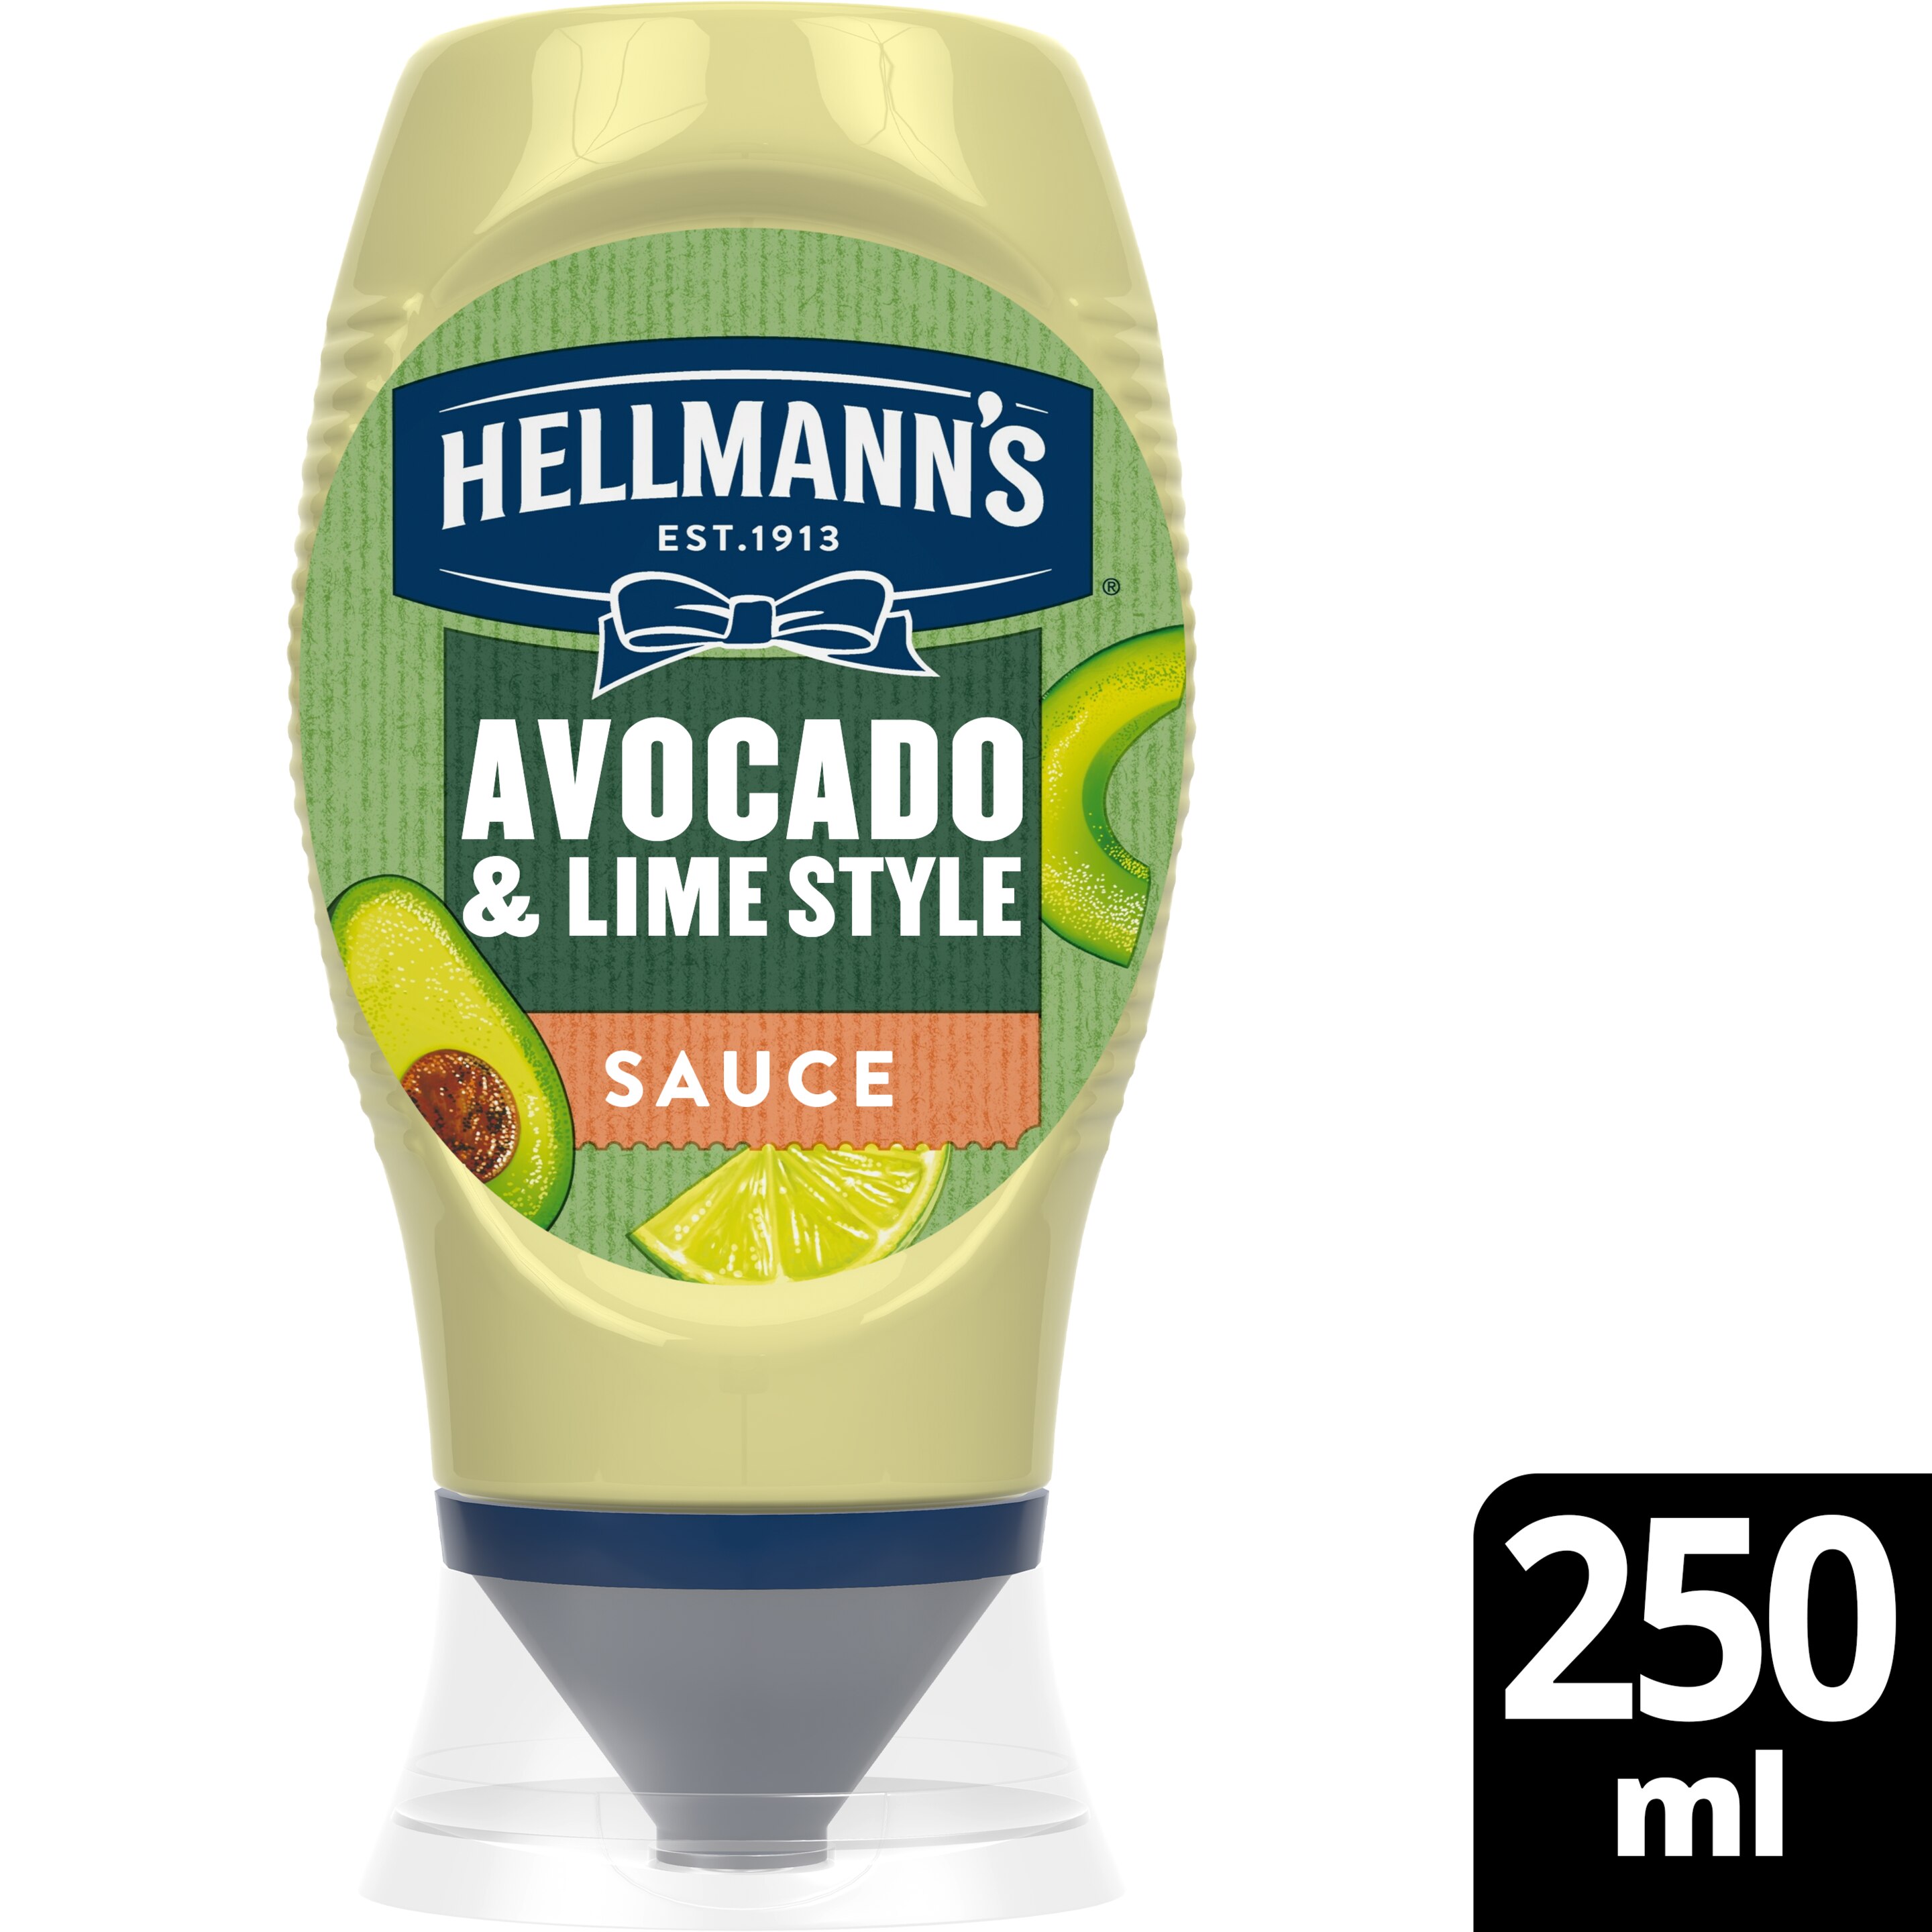 Hellmann's Avocado & Lime Style Sauce